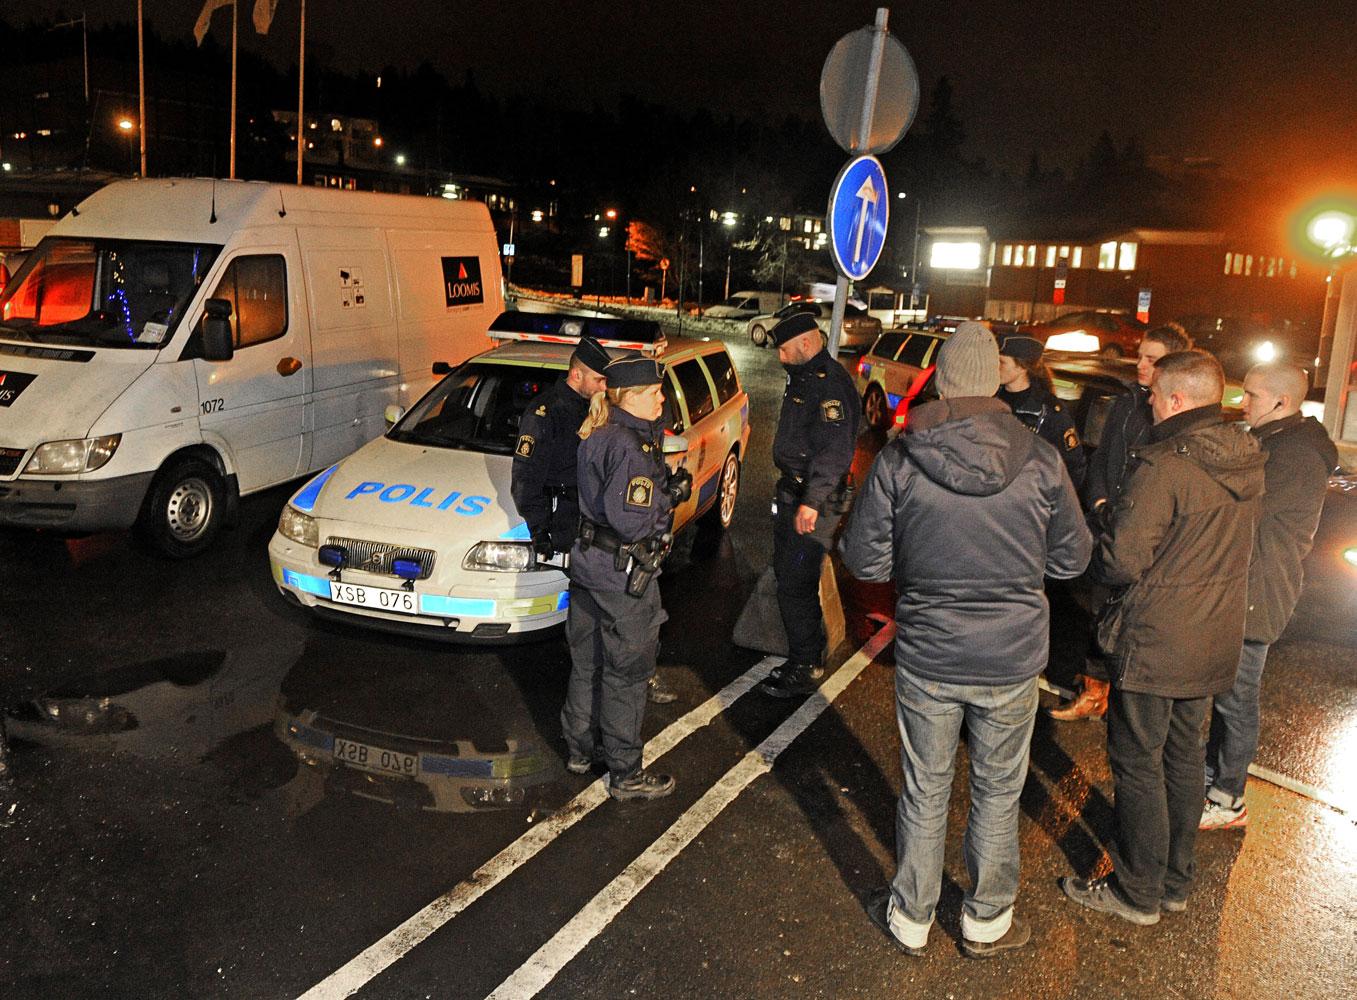 En värdetransport rånades av två yxbeväpnade män i Sollentuna. Efter rånet flydde männen till fots.